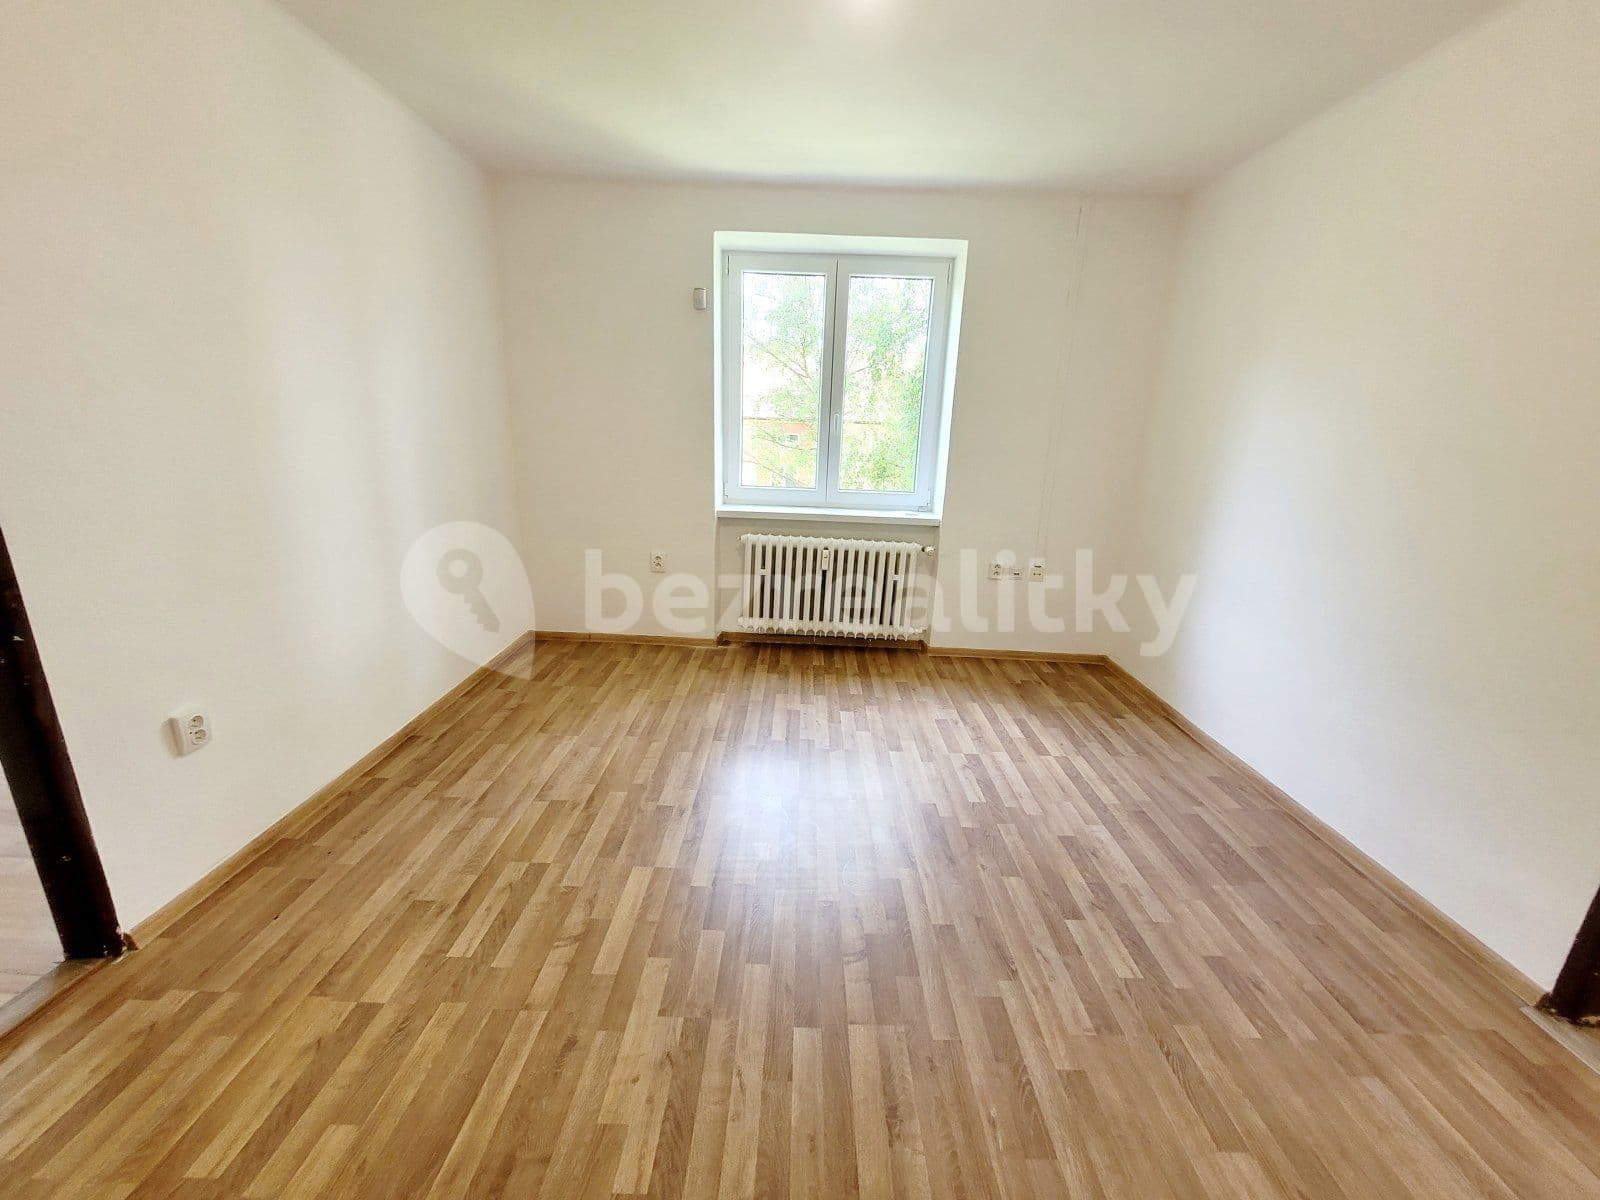 4 bedroom flat to rent, 83 m², Klimšova, Havířov, Moravskoslezský Region